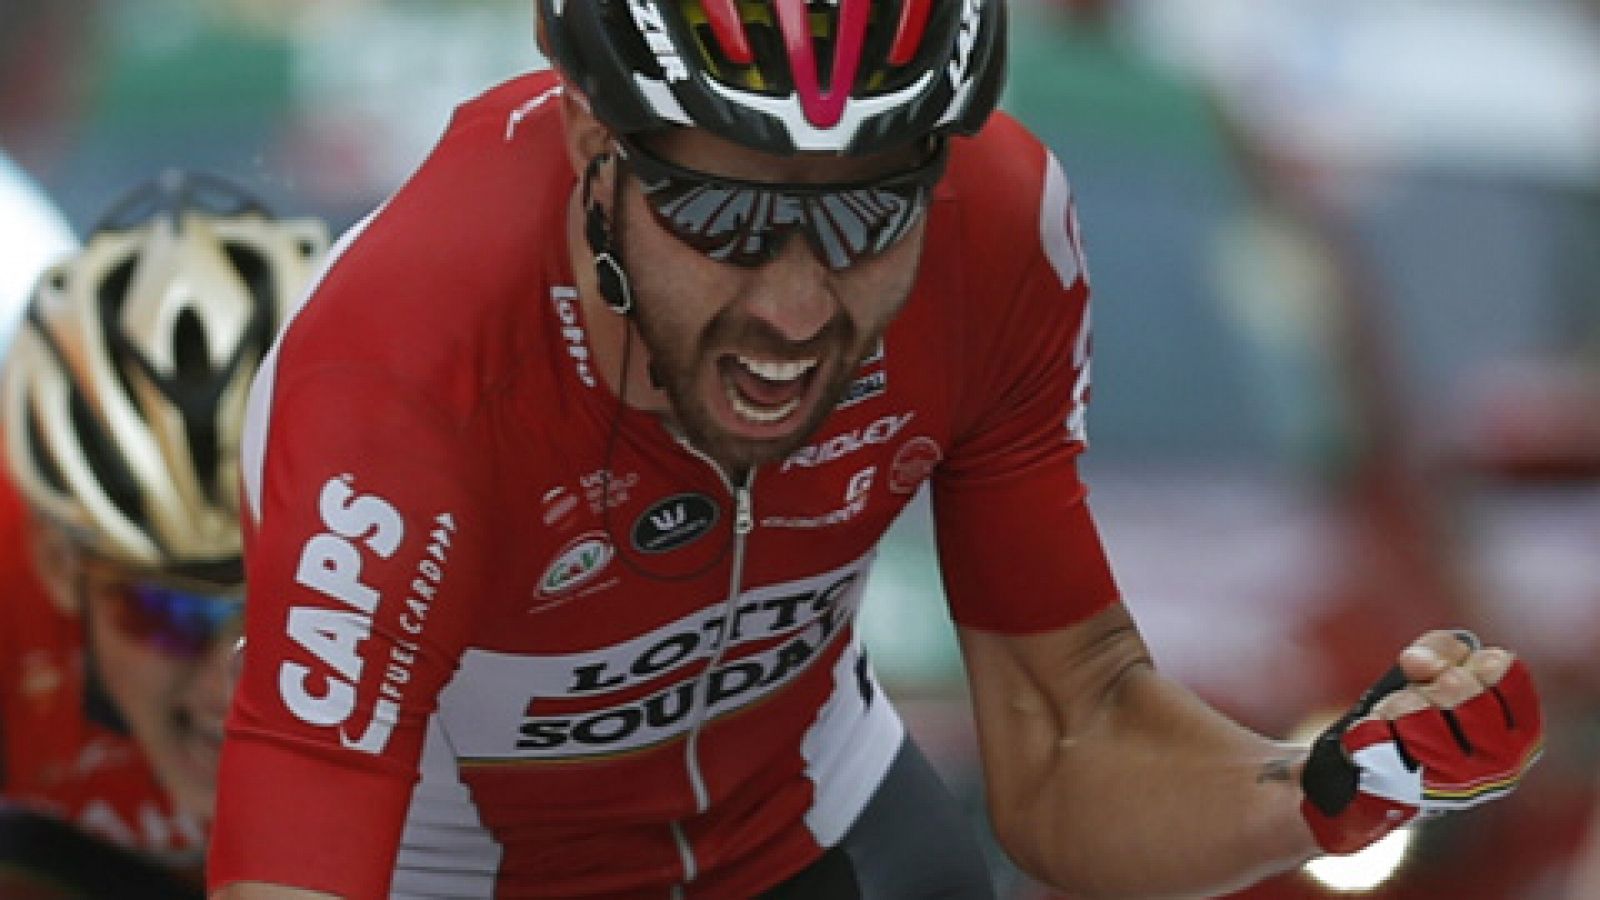 El belga Thomas De Gendt se llevó la antepenúltima etapa de la Vuelta a España en Gijón, acabando con el sueño del ciclista local García Cortina, que fue batido en el esprint tras su escapada.